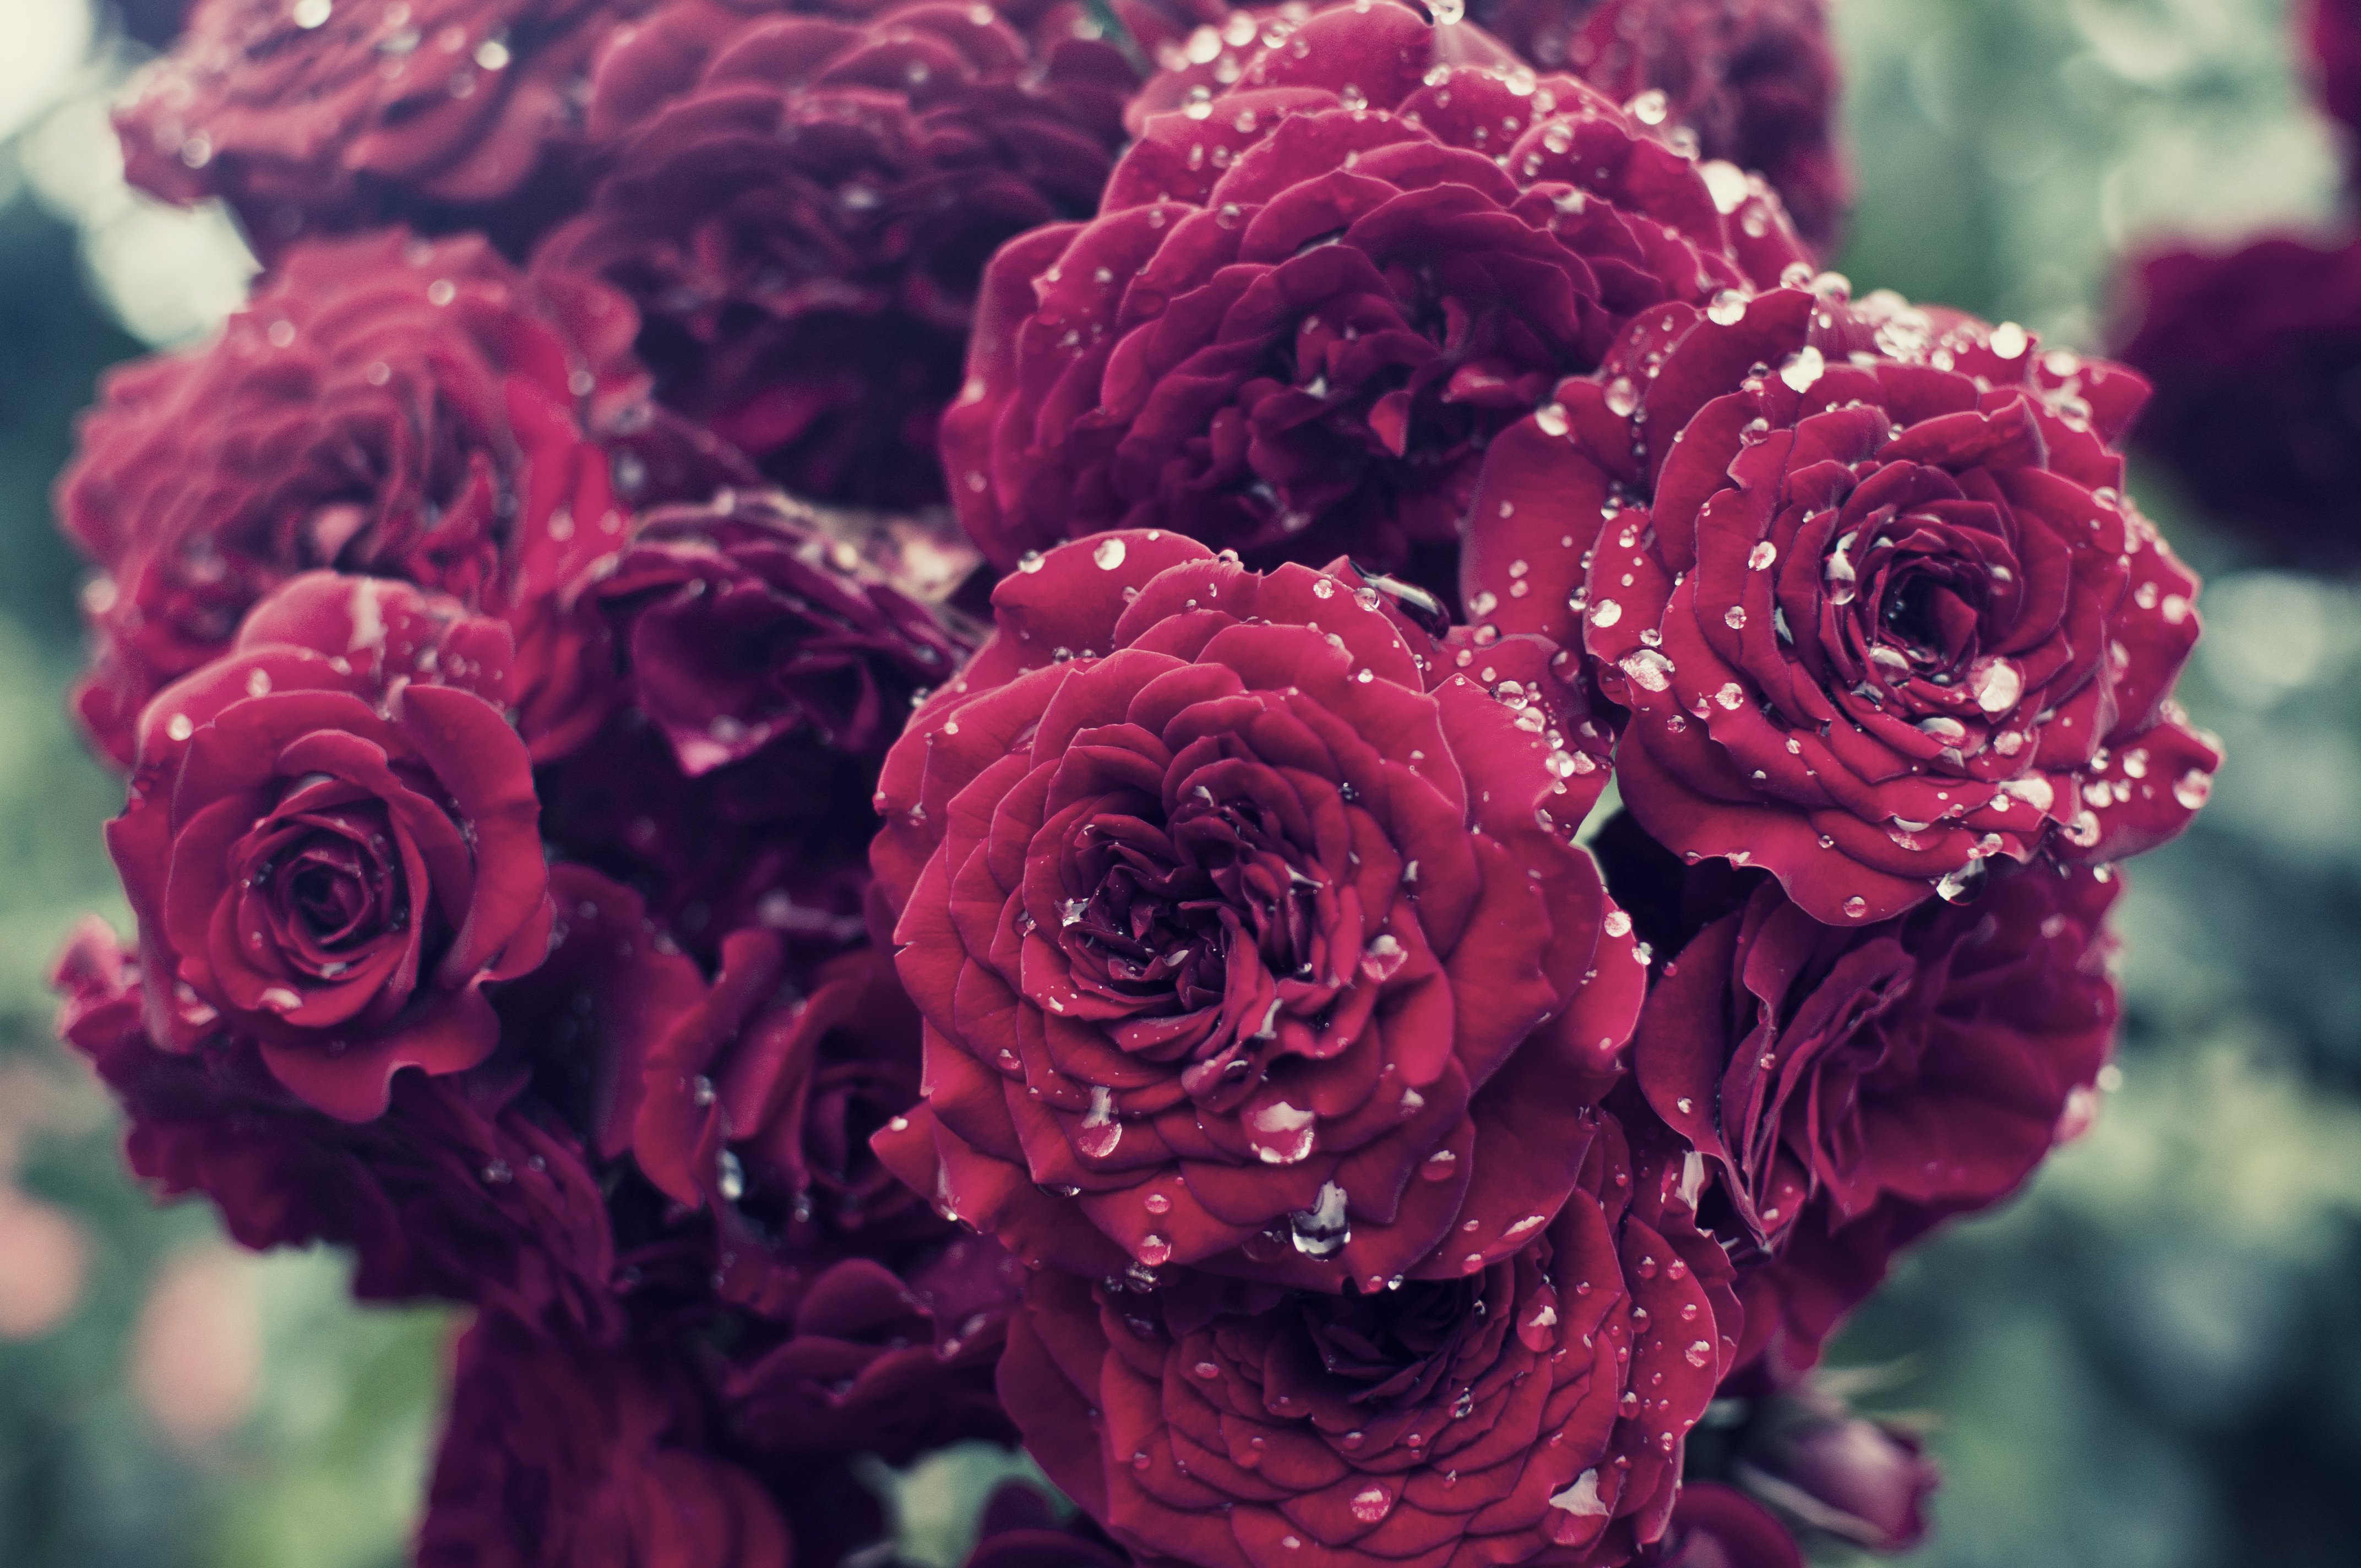 雨に濡れる紅い薔薇の写真を無料ダウンロード フリー素材 ぱくたそ